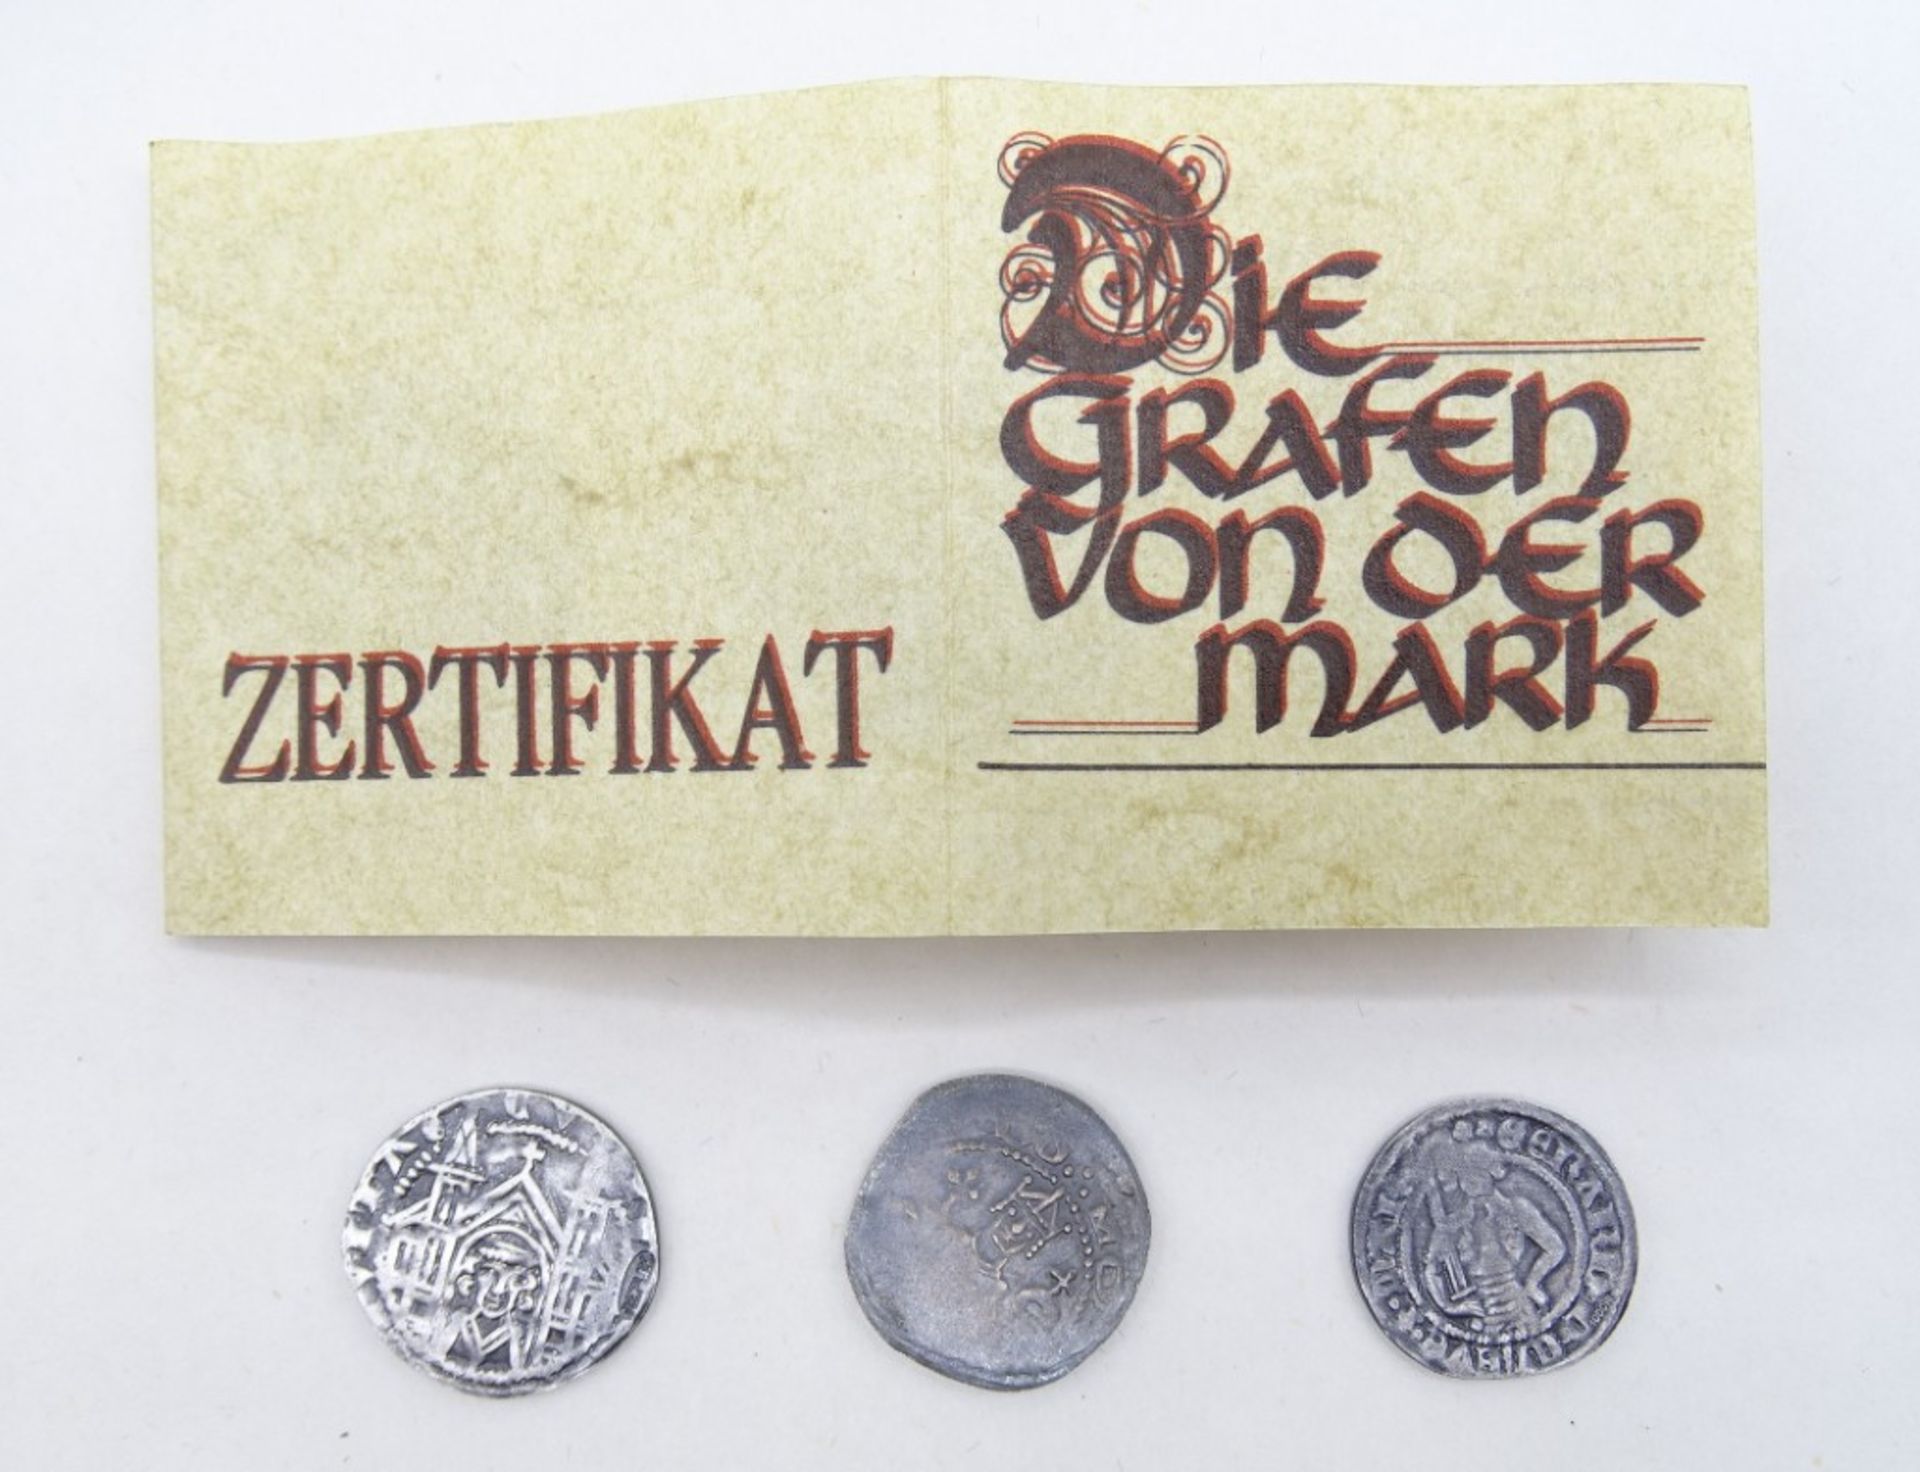 3 Repliken antiker Münzen "Die Grafen von der Mark", Feinsilber, in Schatulle mit Zertifikat, Münze - Bild 4 aus 4